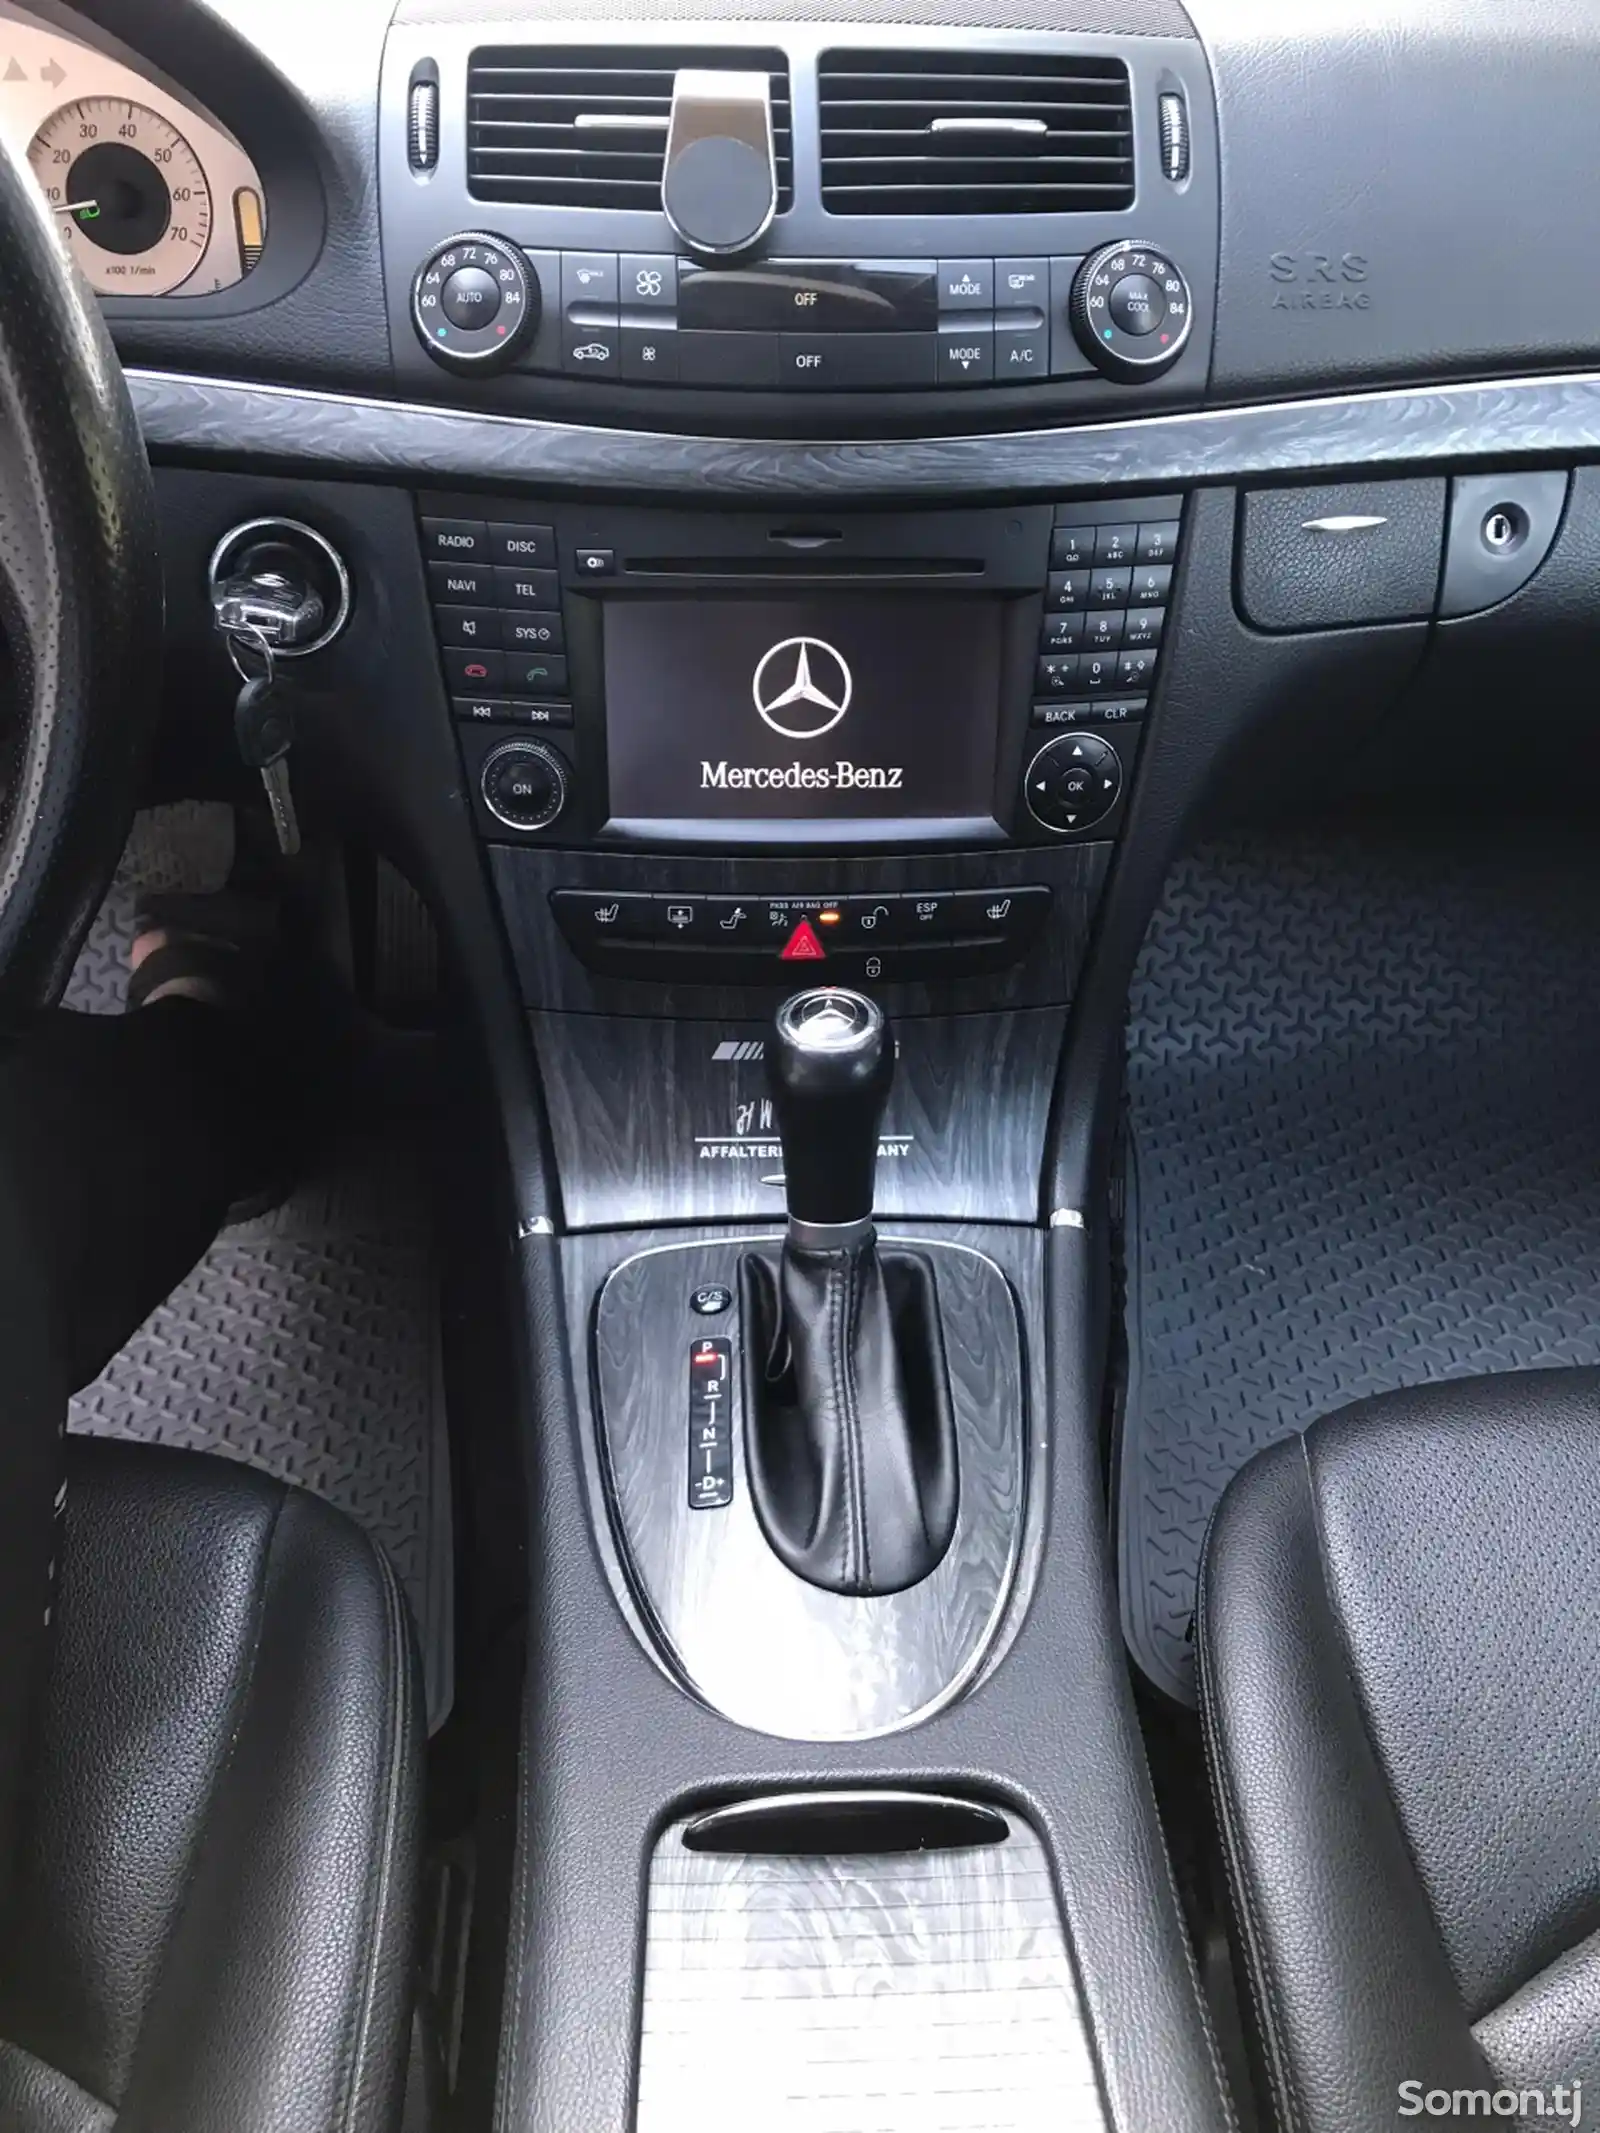 Mercedes-Benz E class, 2008-2